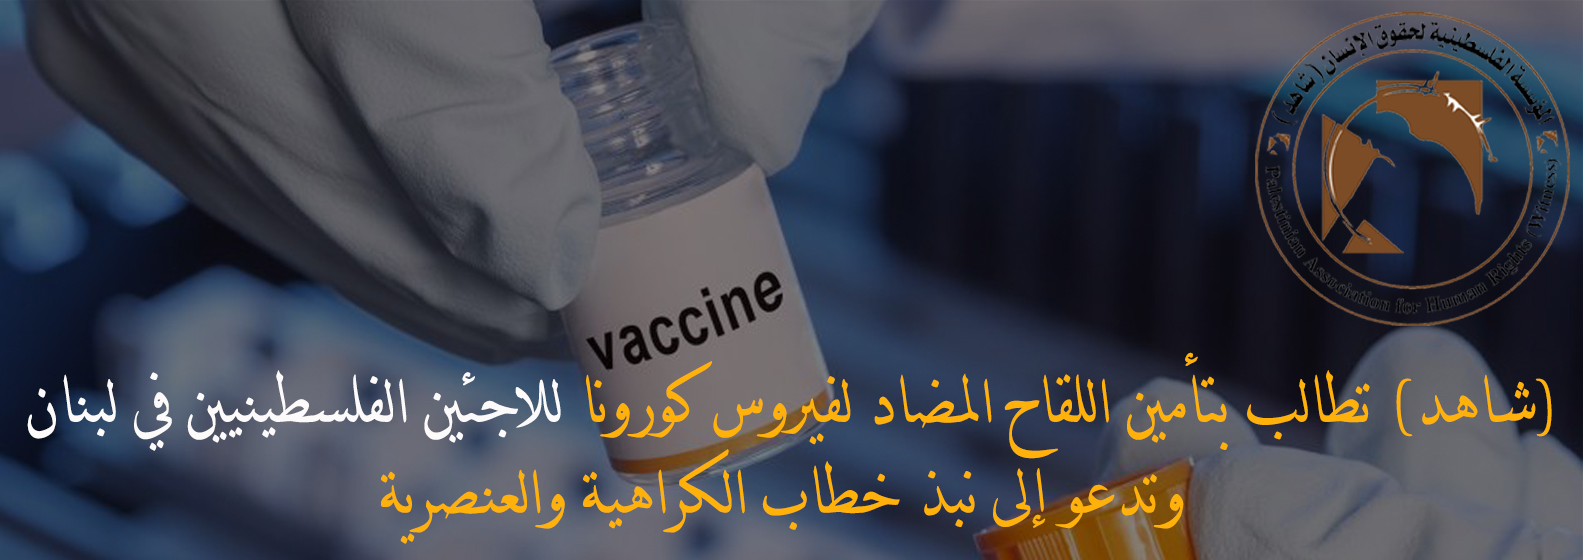 (شاهد) تطالب بتأمين اللقاح المضاد لفيروس كورونا للاجئين الفلسطينيين في لبنان